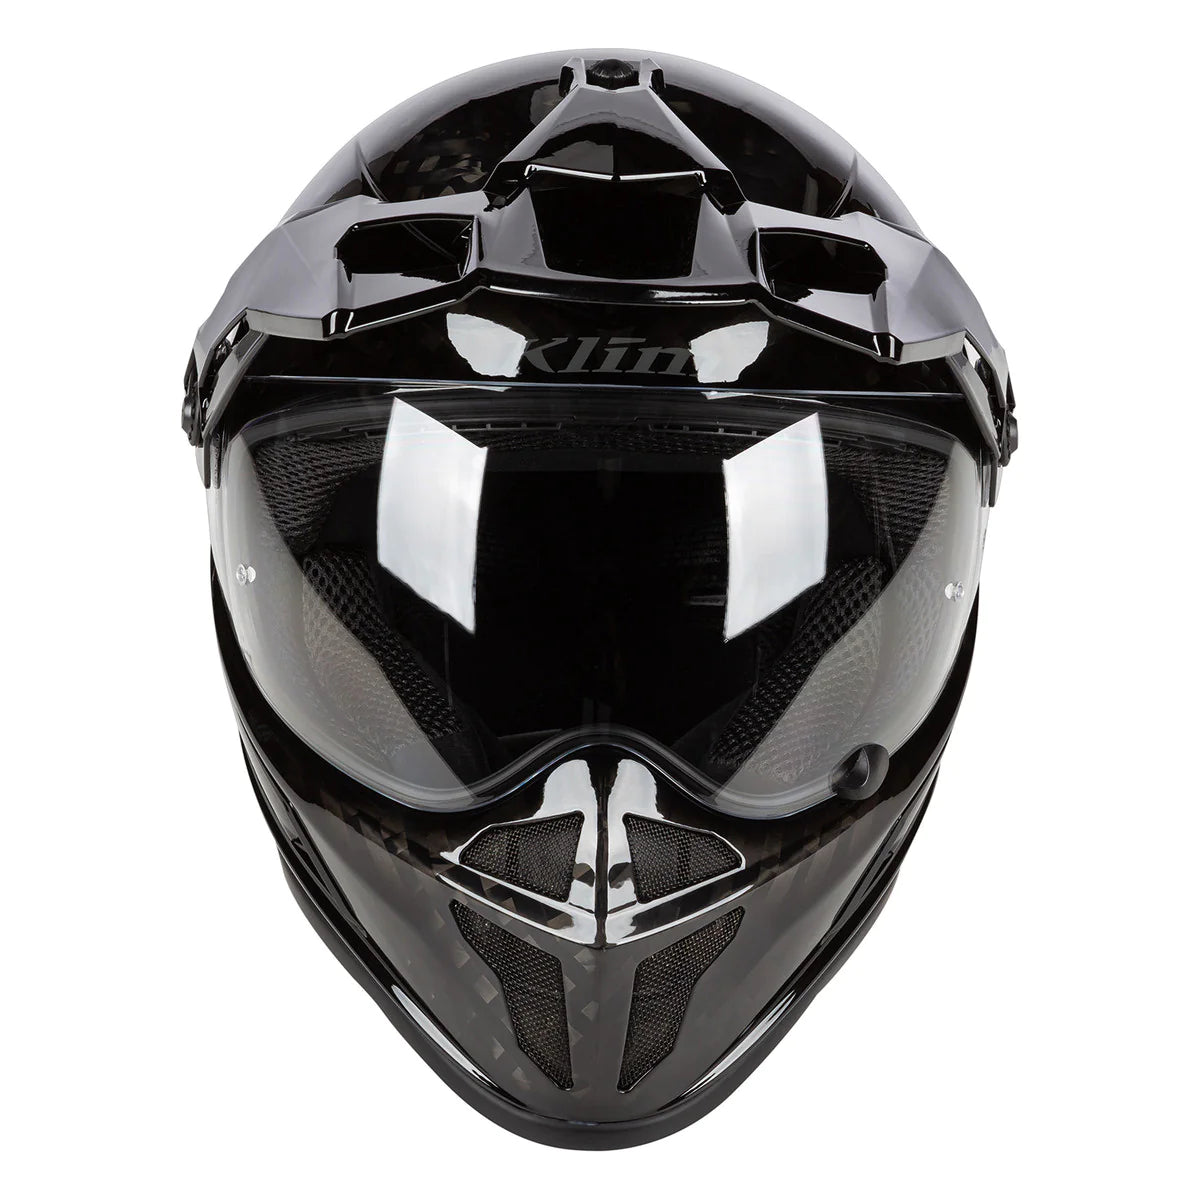 Klim Krios Karbon Adventure Gloss Karbon Black Helmet motorcycle front view